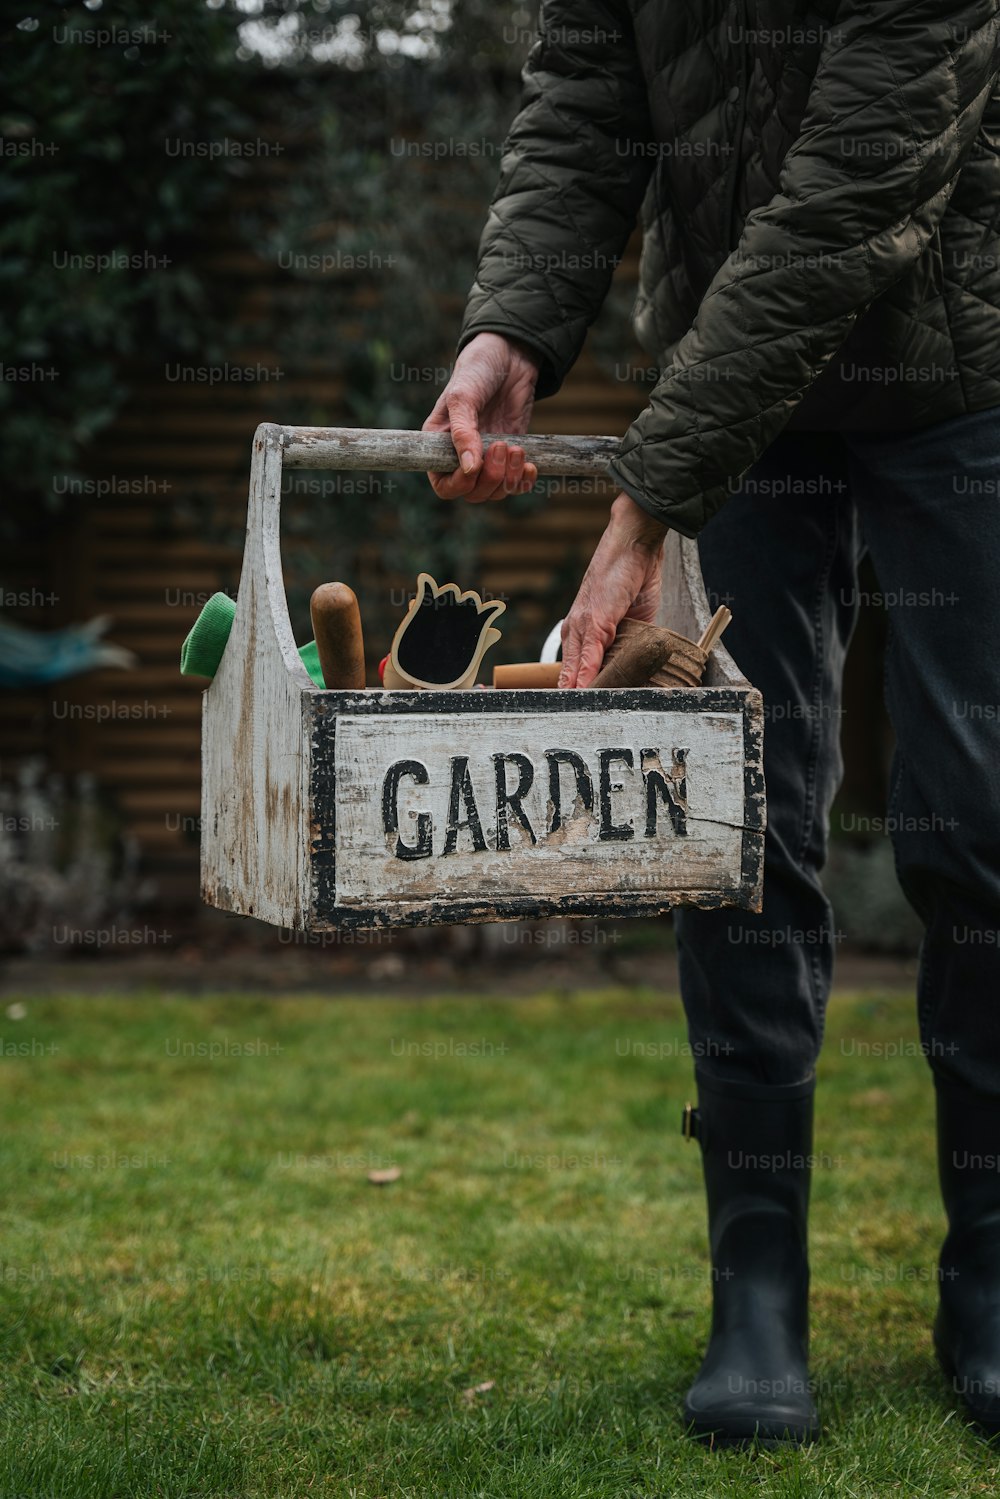 Un uomo tiene in mano una scatola da giardino nell'erba